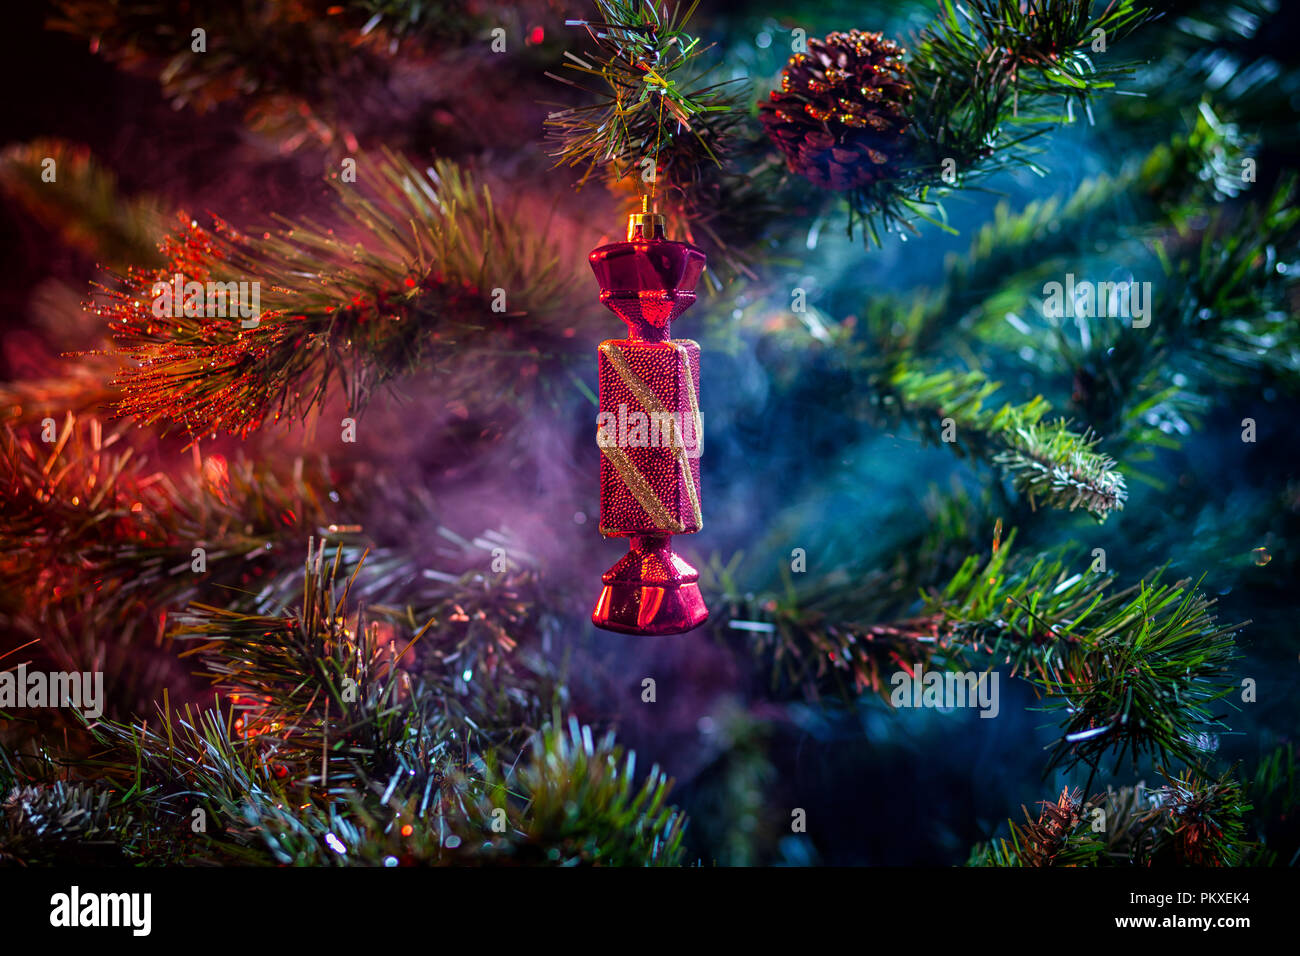 La décoration des boules de Noël rouge brillant avec des bonbons dans la chambre de fumée de couleur violet-rouge, sur un fond d'arbres de Noël. Concept d'une voiture de Noël moderne Banque D'Images